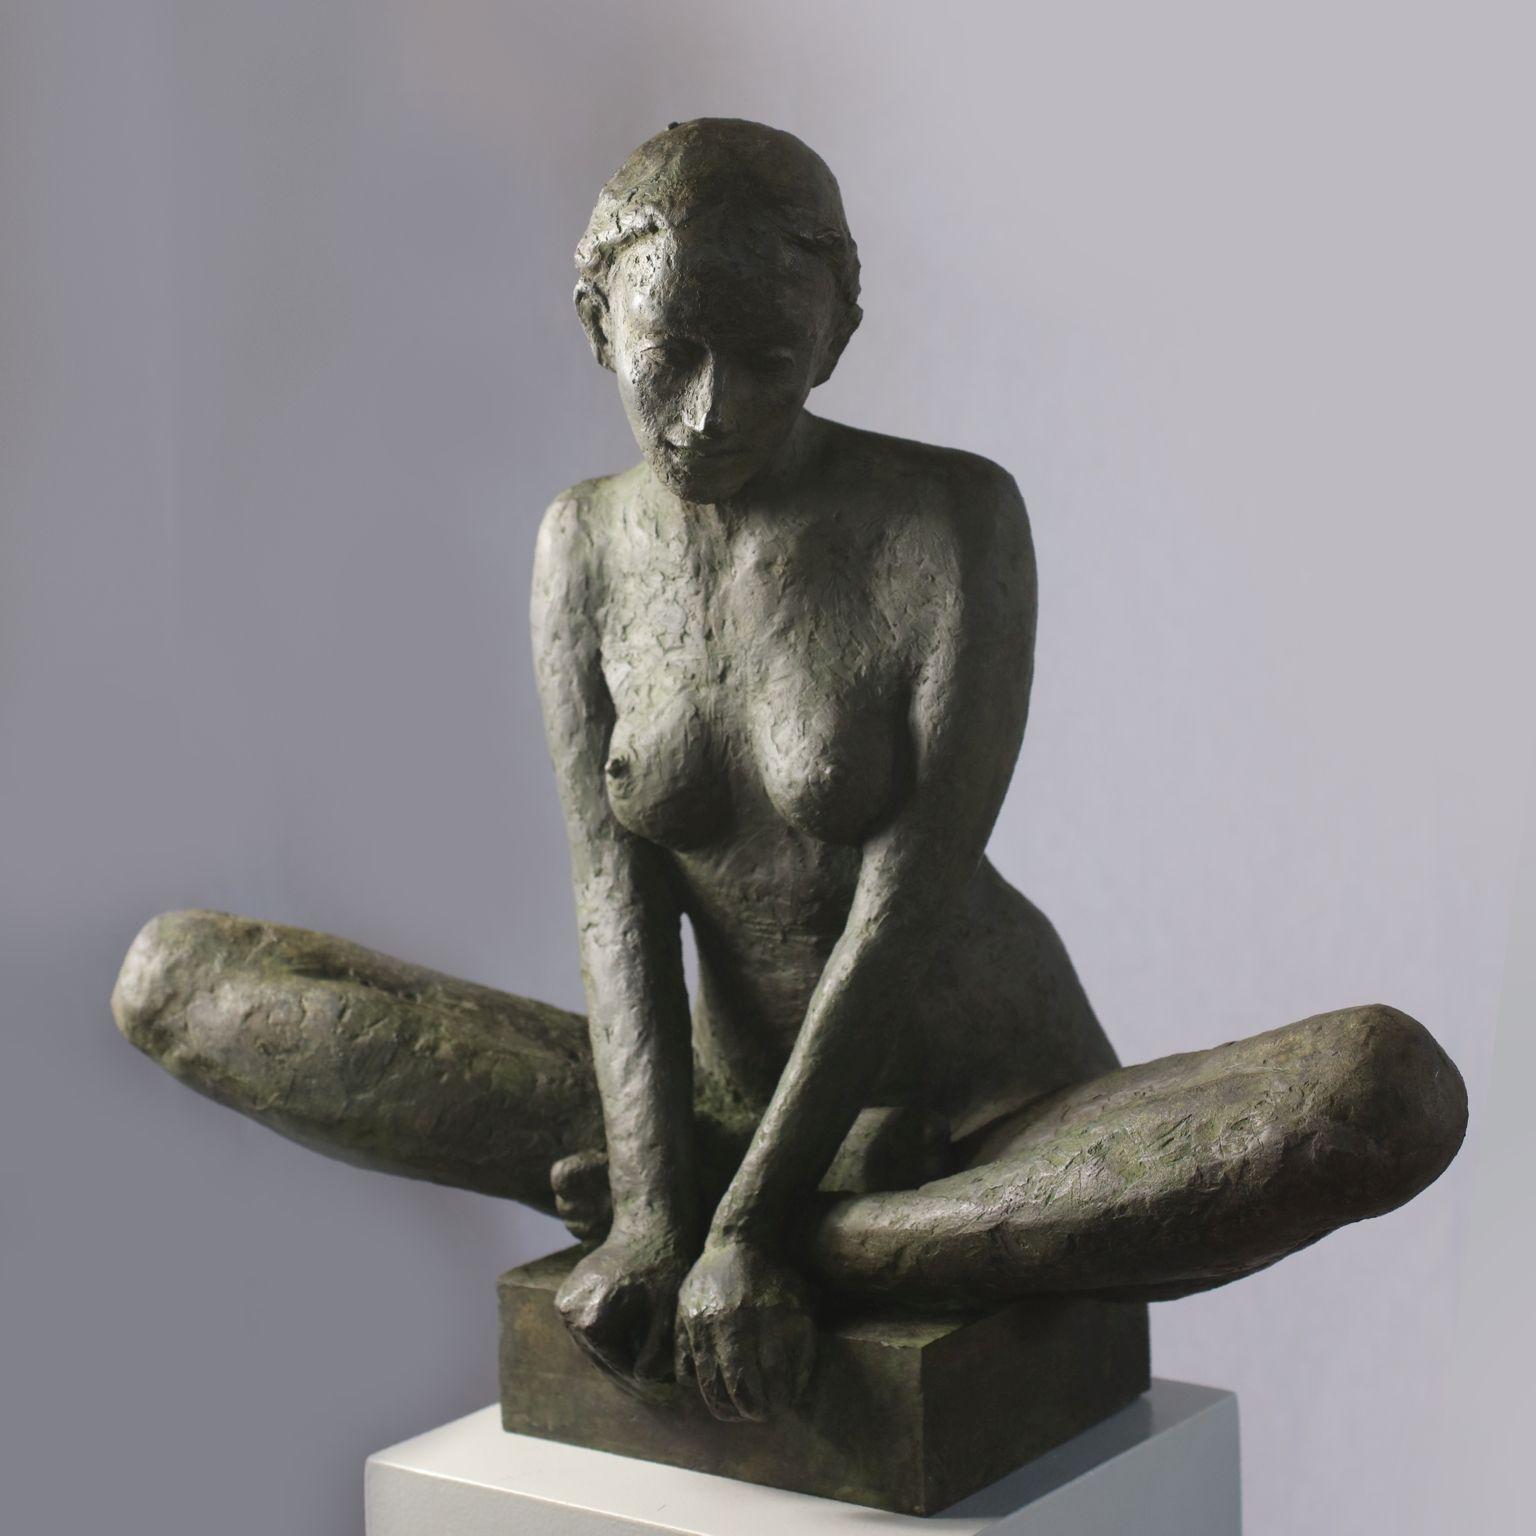 Moyen-sculpture contemporaine de femme nue en bronze dans une pose méditative